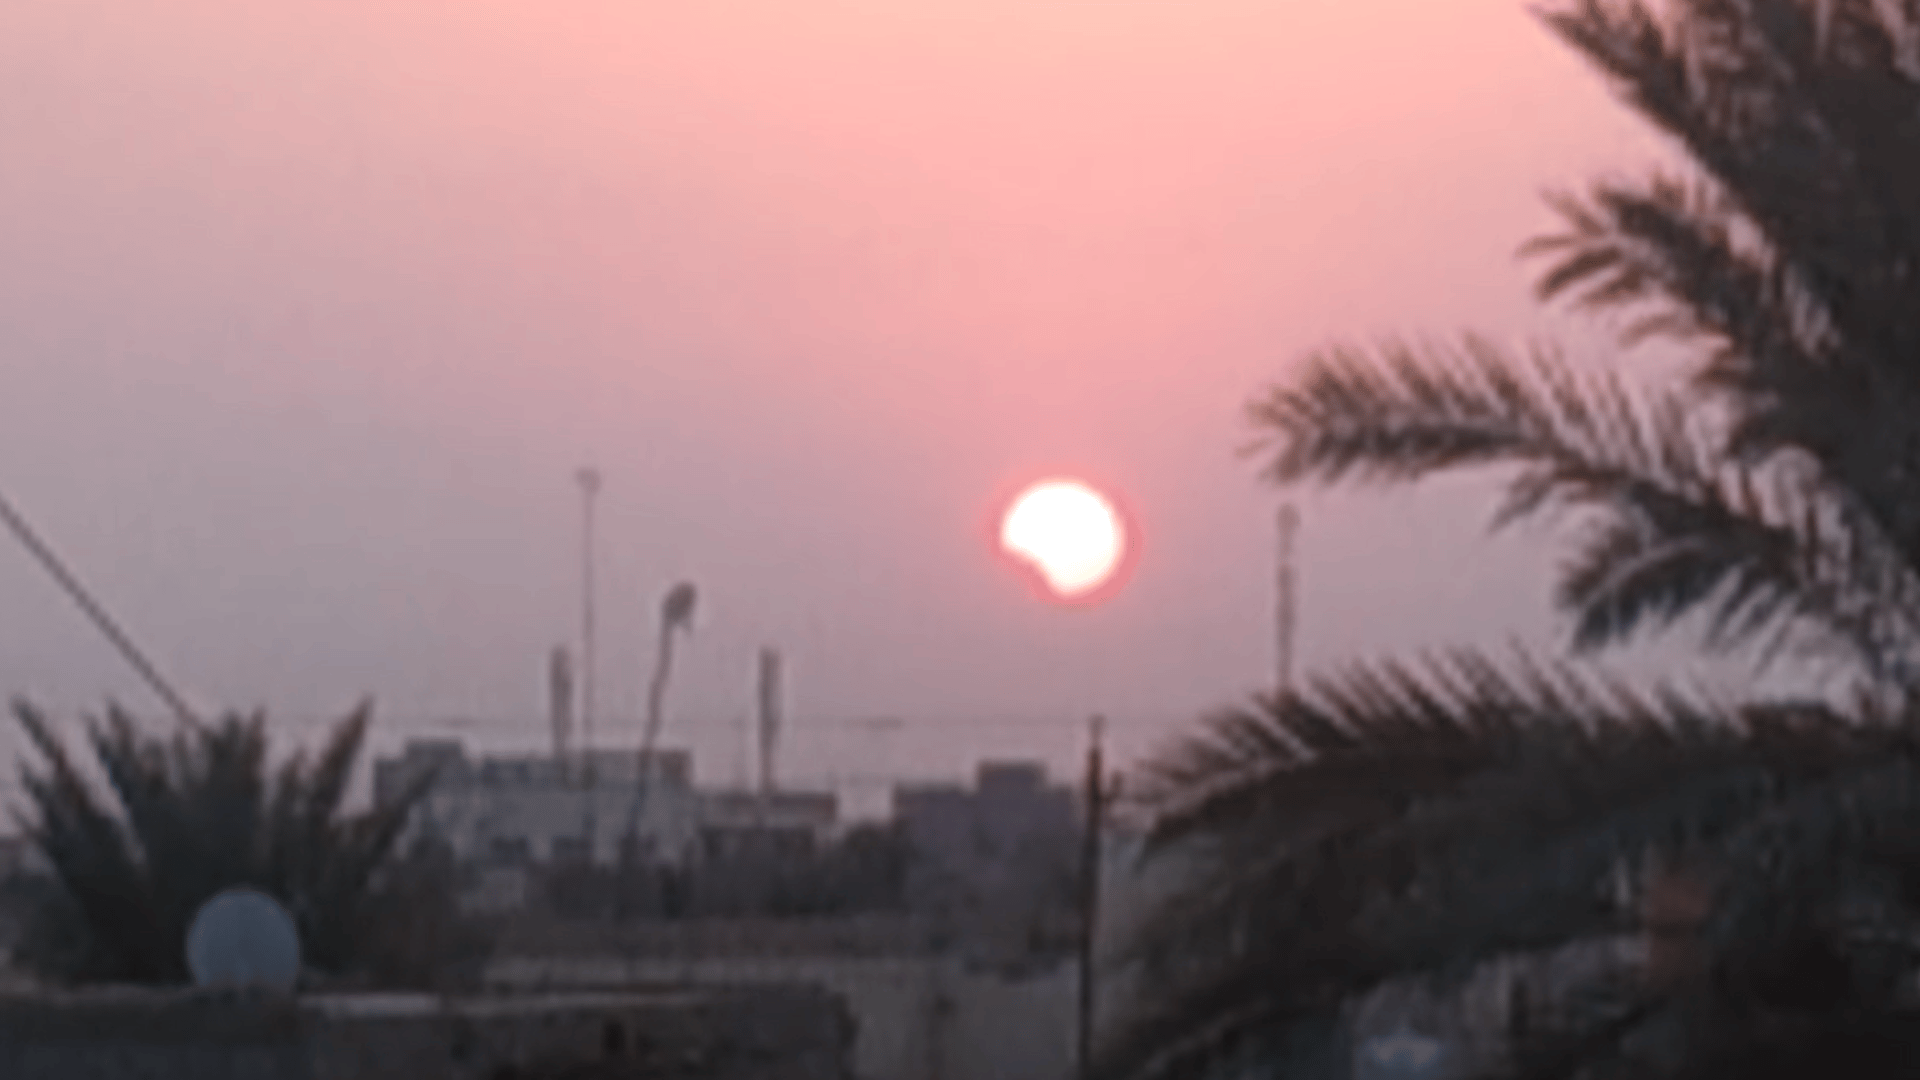 فلكي عراقي: كسوف الشمس الآن سيؤثر على علاقاتكم العاطفية 4 شهور